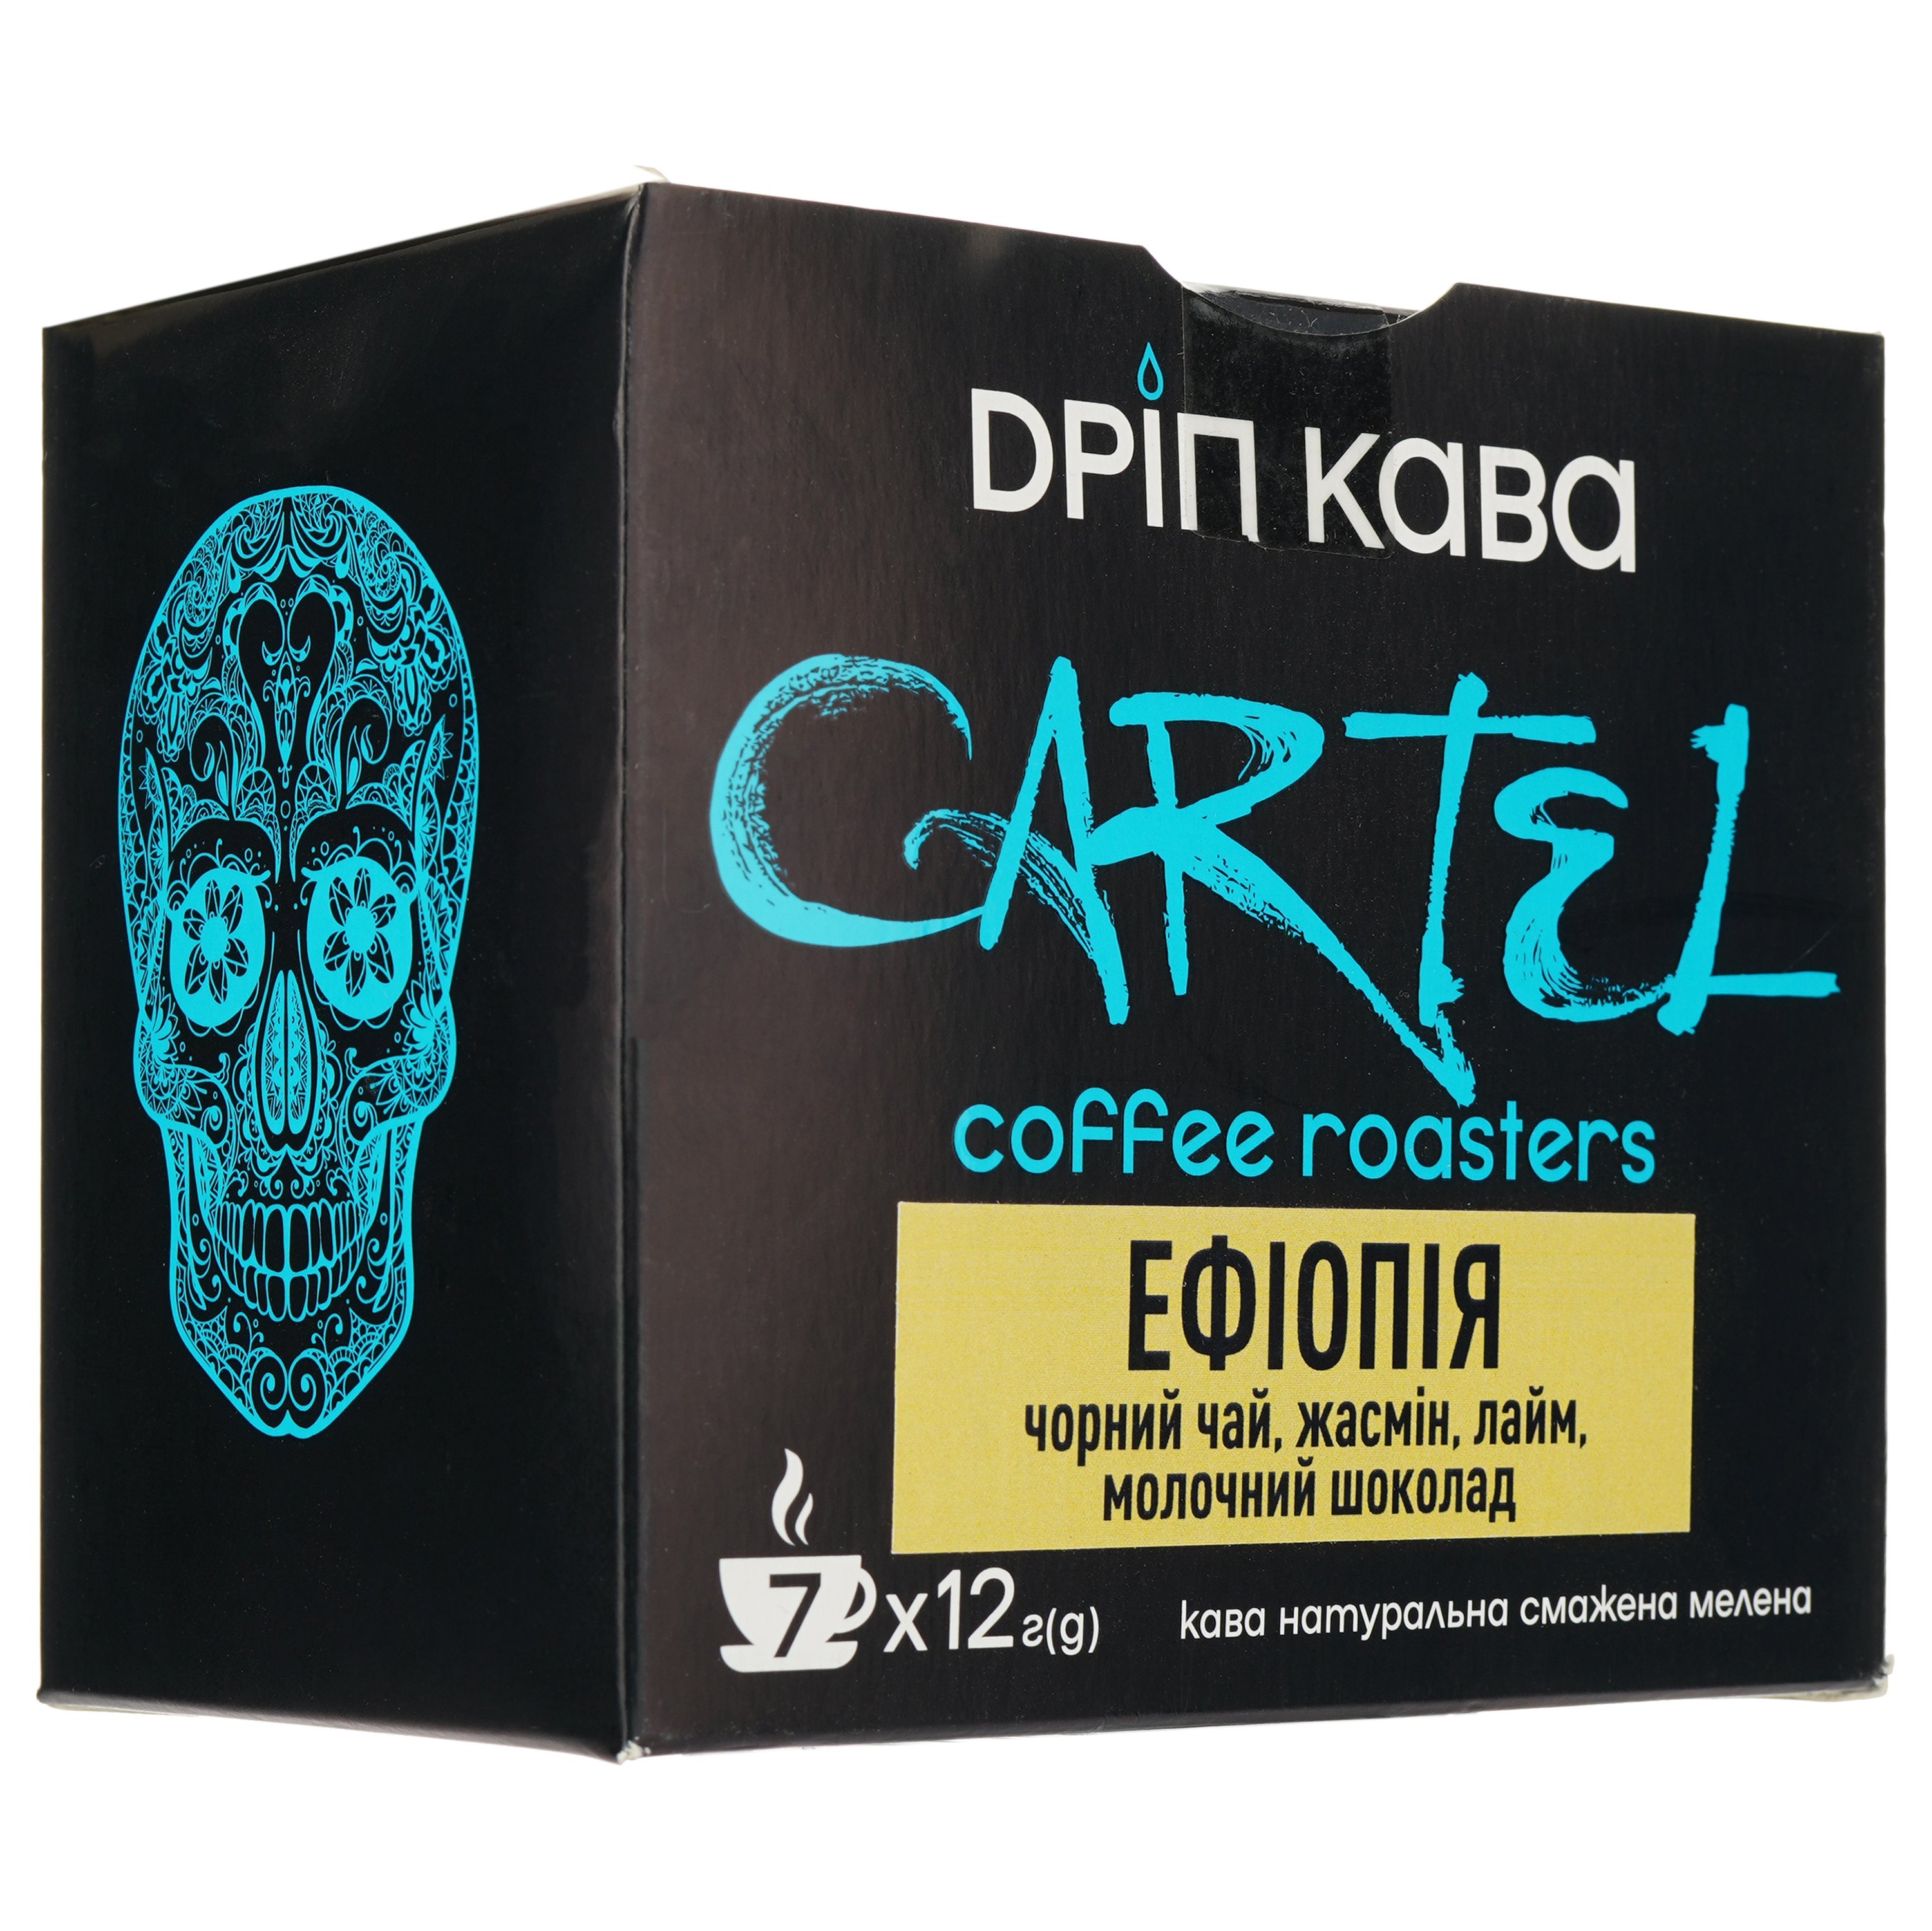 Дріп-кава Cartel Ефіопія 84 г (7 шт. по 12 г) - фото 1